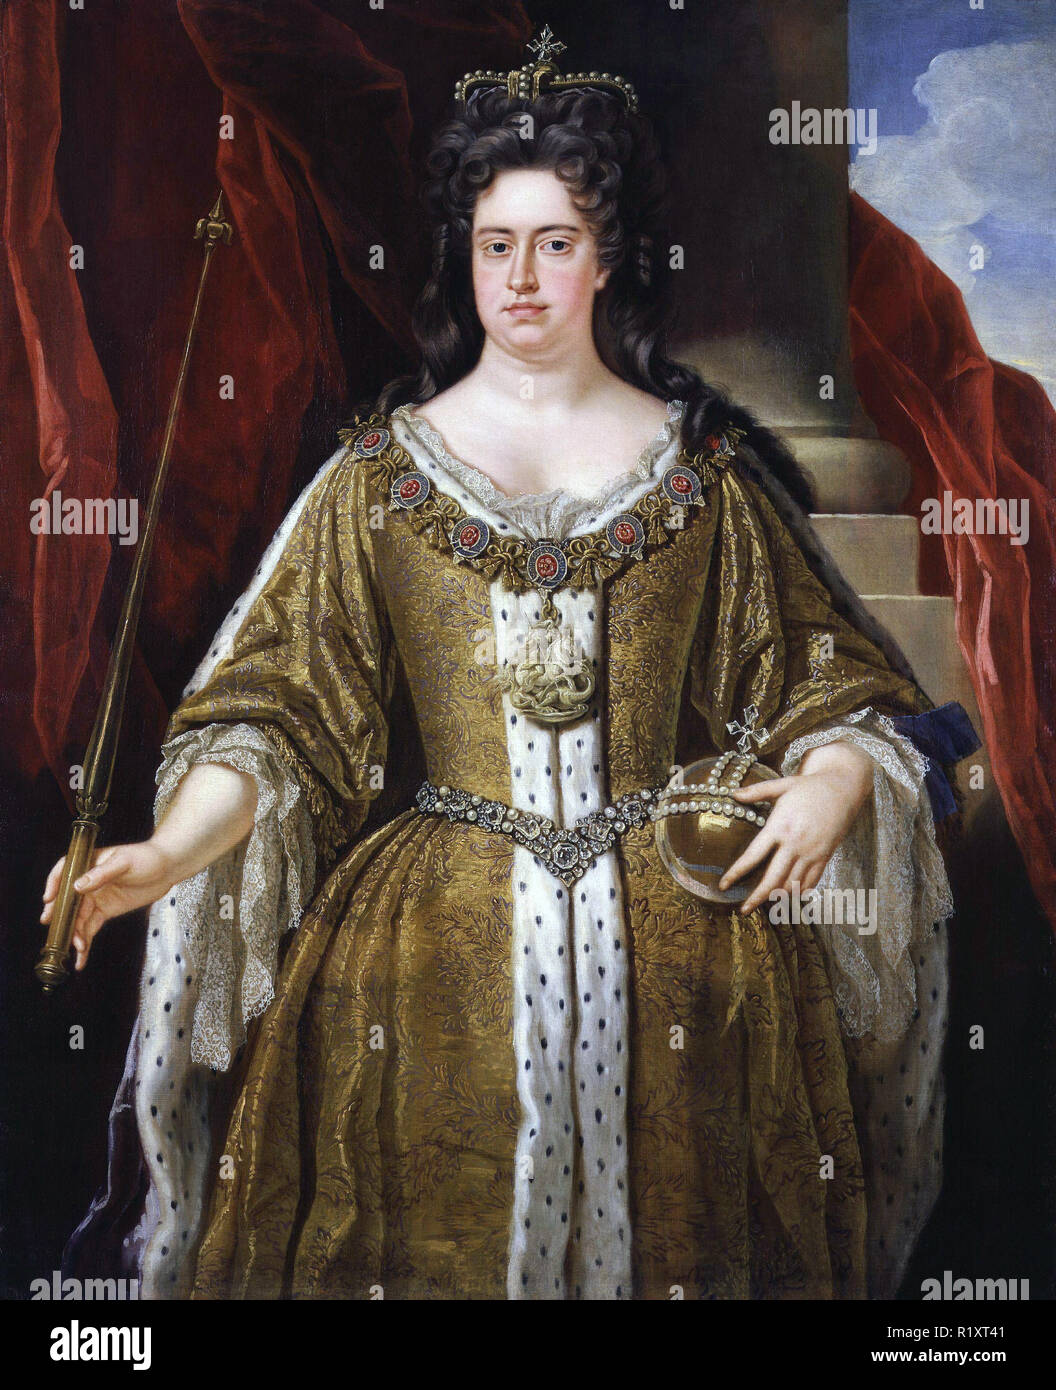 La regina ANNA DI GRAN BRETAGNA (1665-1714) circa 1702. Artista sconosciuto Foto Stock